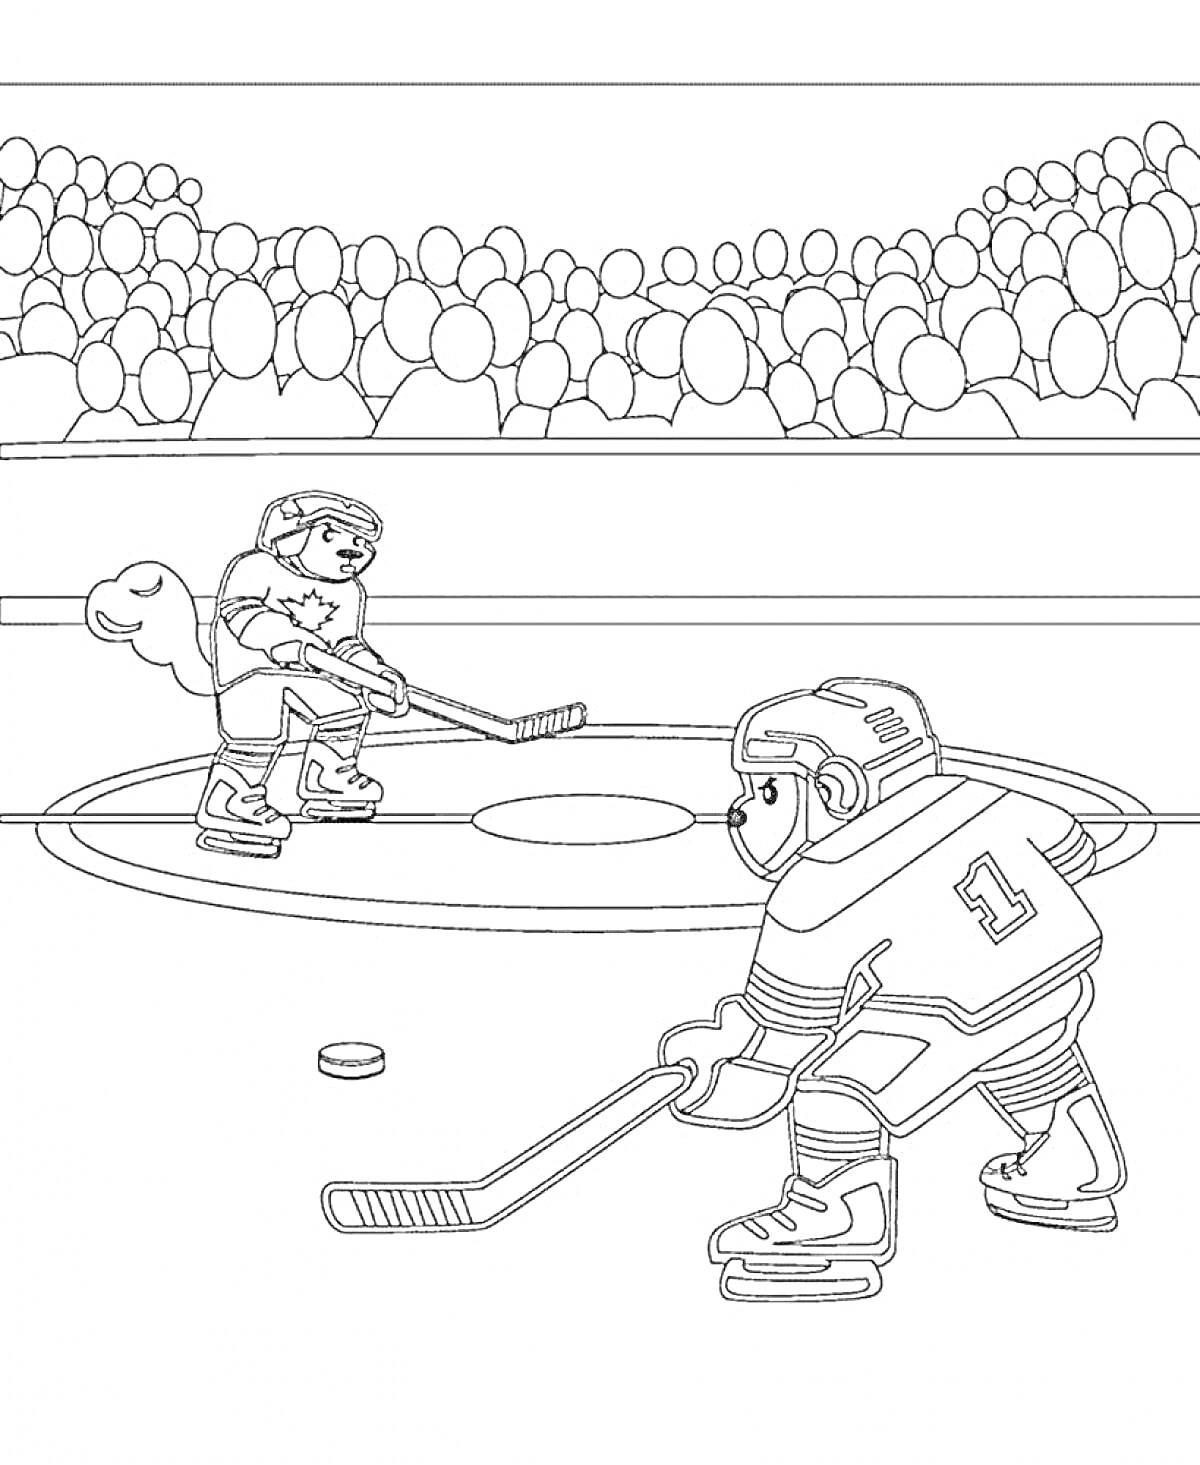 Раскраска Хоккейный матч на льду с двумя игроками, клюшками, шайбой и трибунами с болельщиками